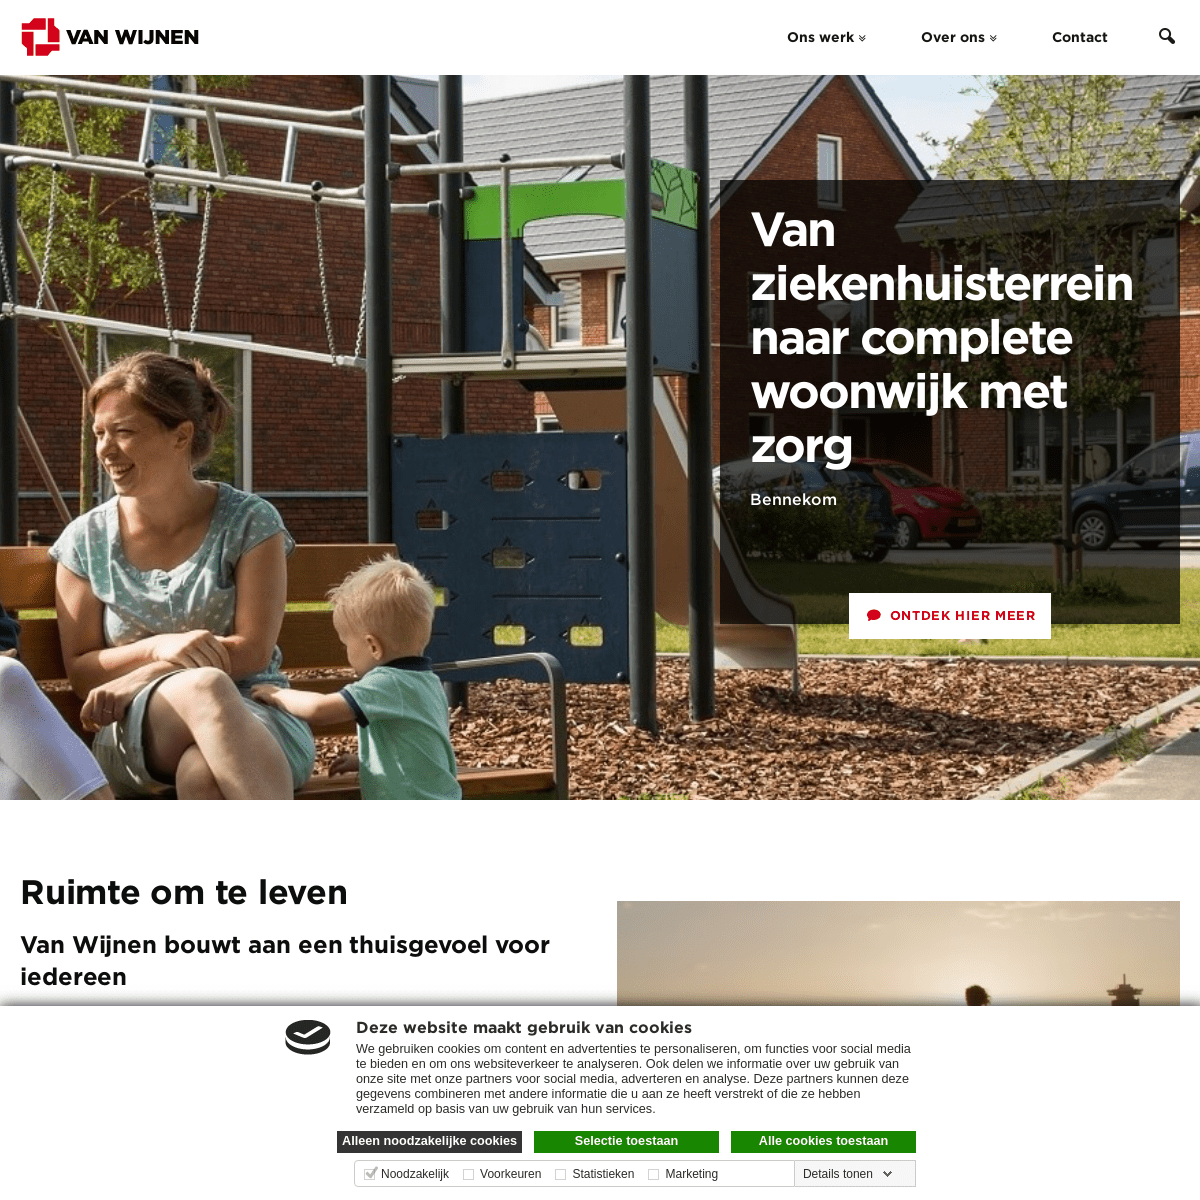 A complete backup of https://vanwijnen.nl